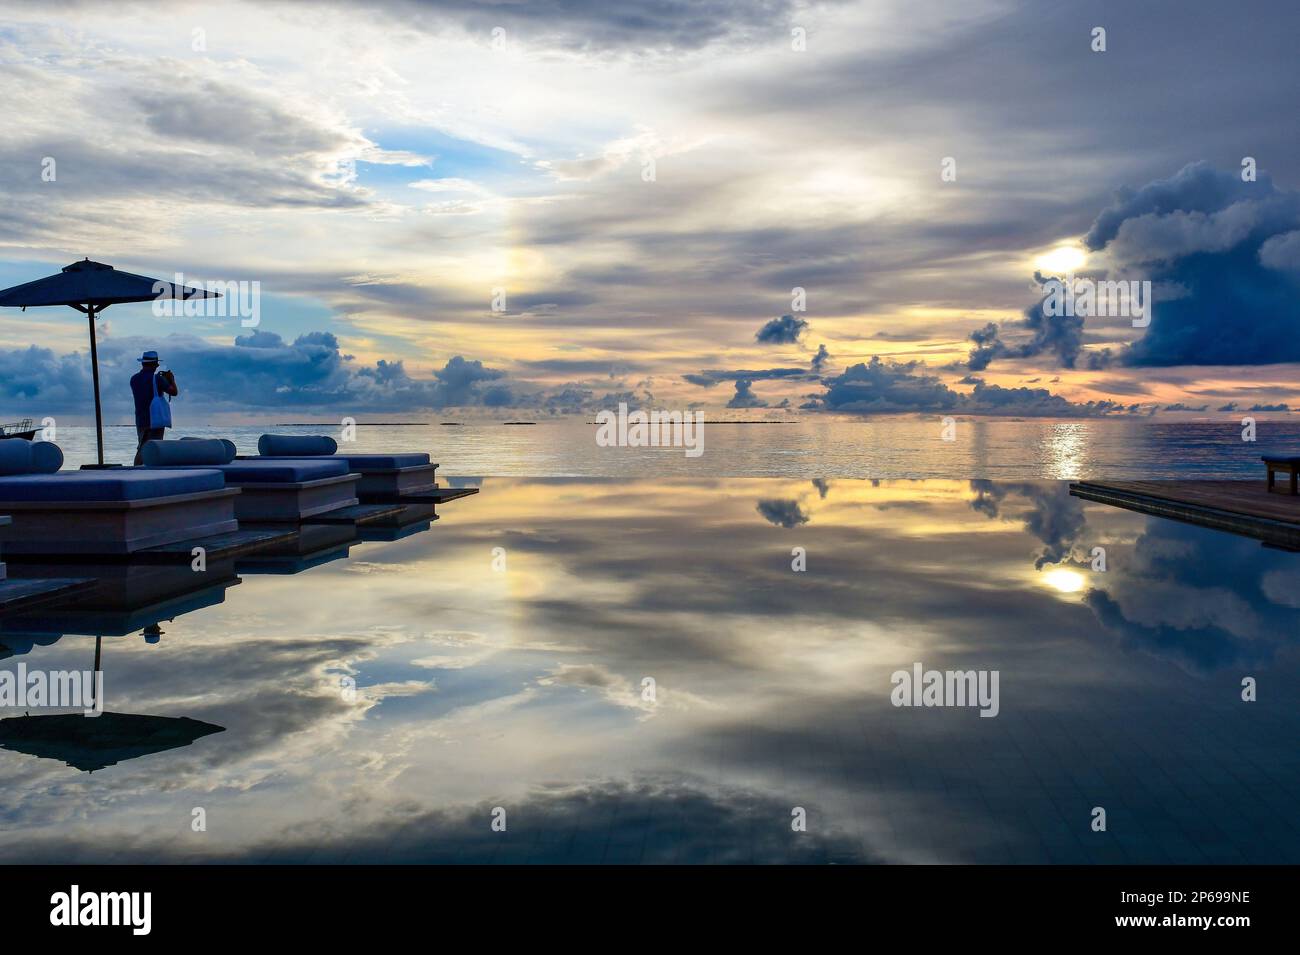 Ein Tourist am Infinity-Pool eines Luxusresorts, der Fotos vom Sonnenuntergang, den Malediven, macht Stockfoto